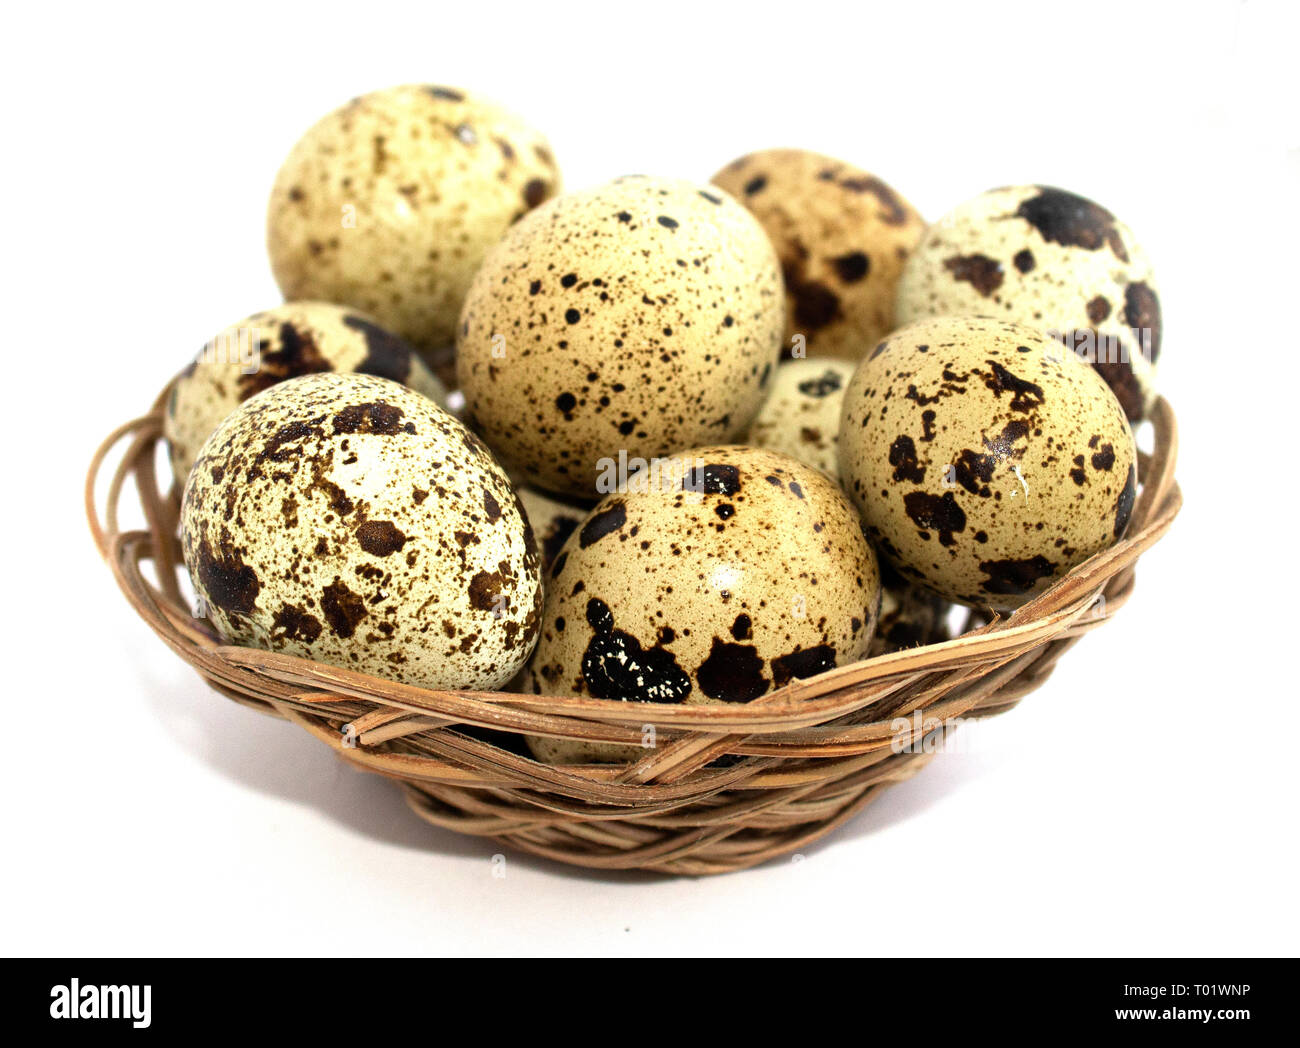 Uova di quaglia in un cesto su uno sfondo bianco. Protein diet. Dieta sana. Messa a fuoco sfocata. Foto Stock